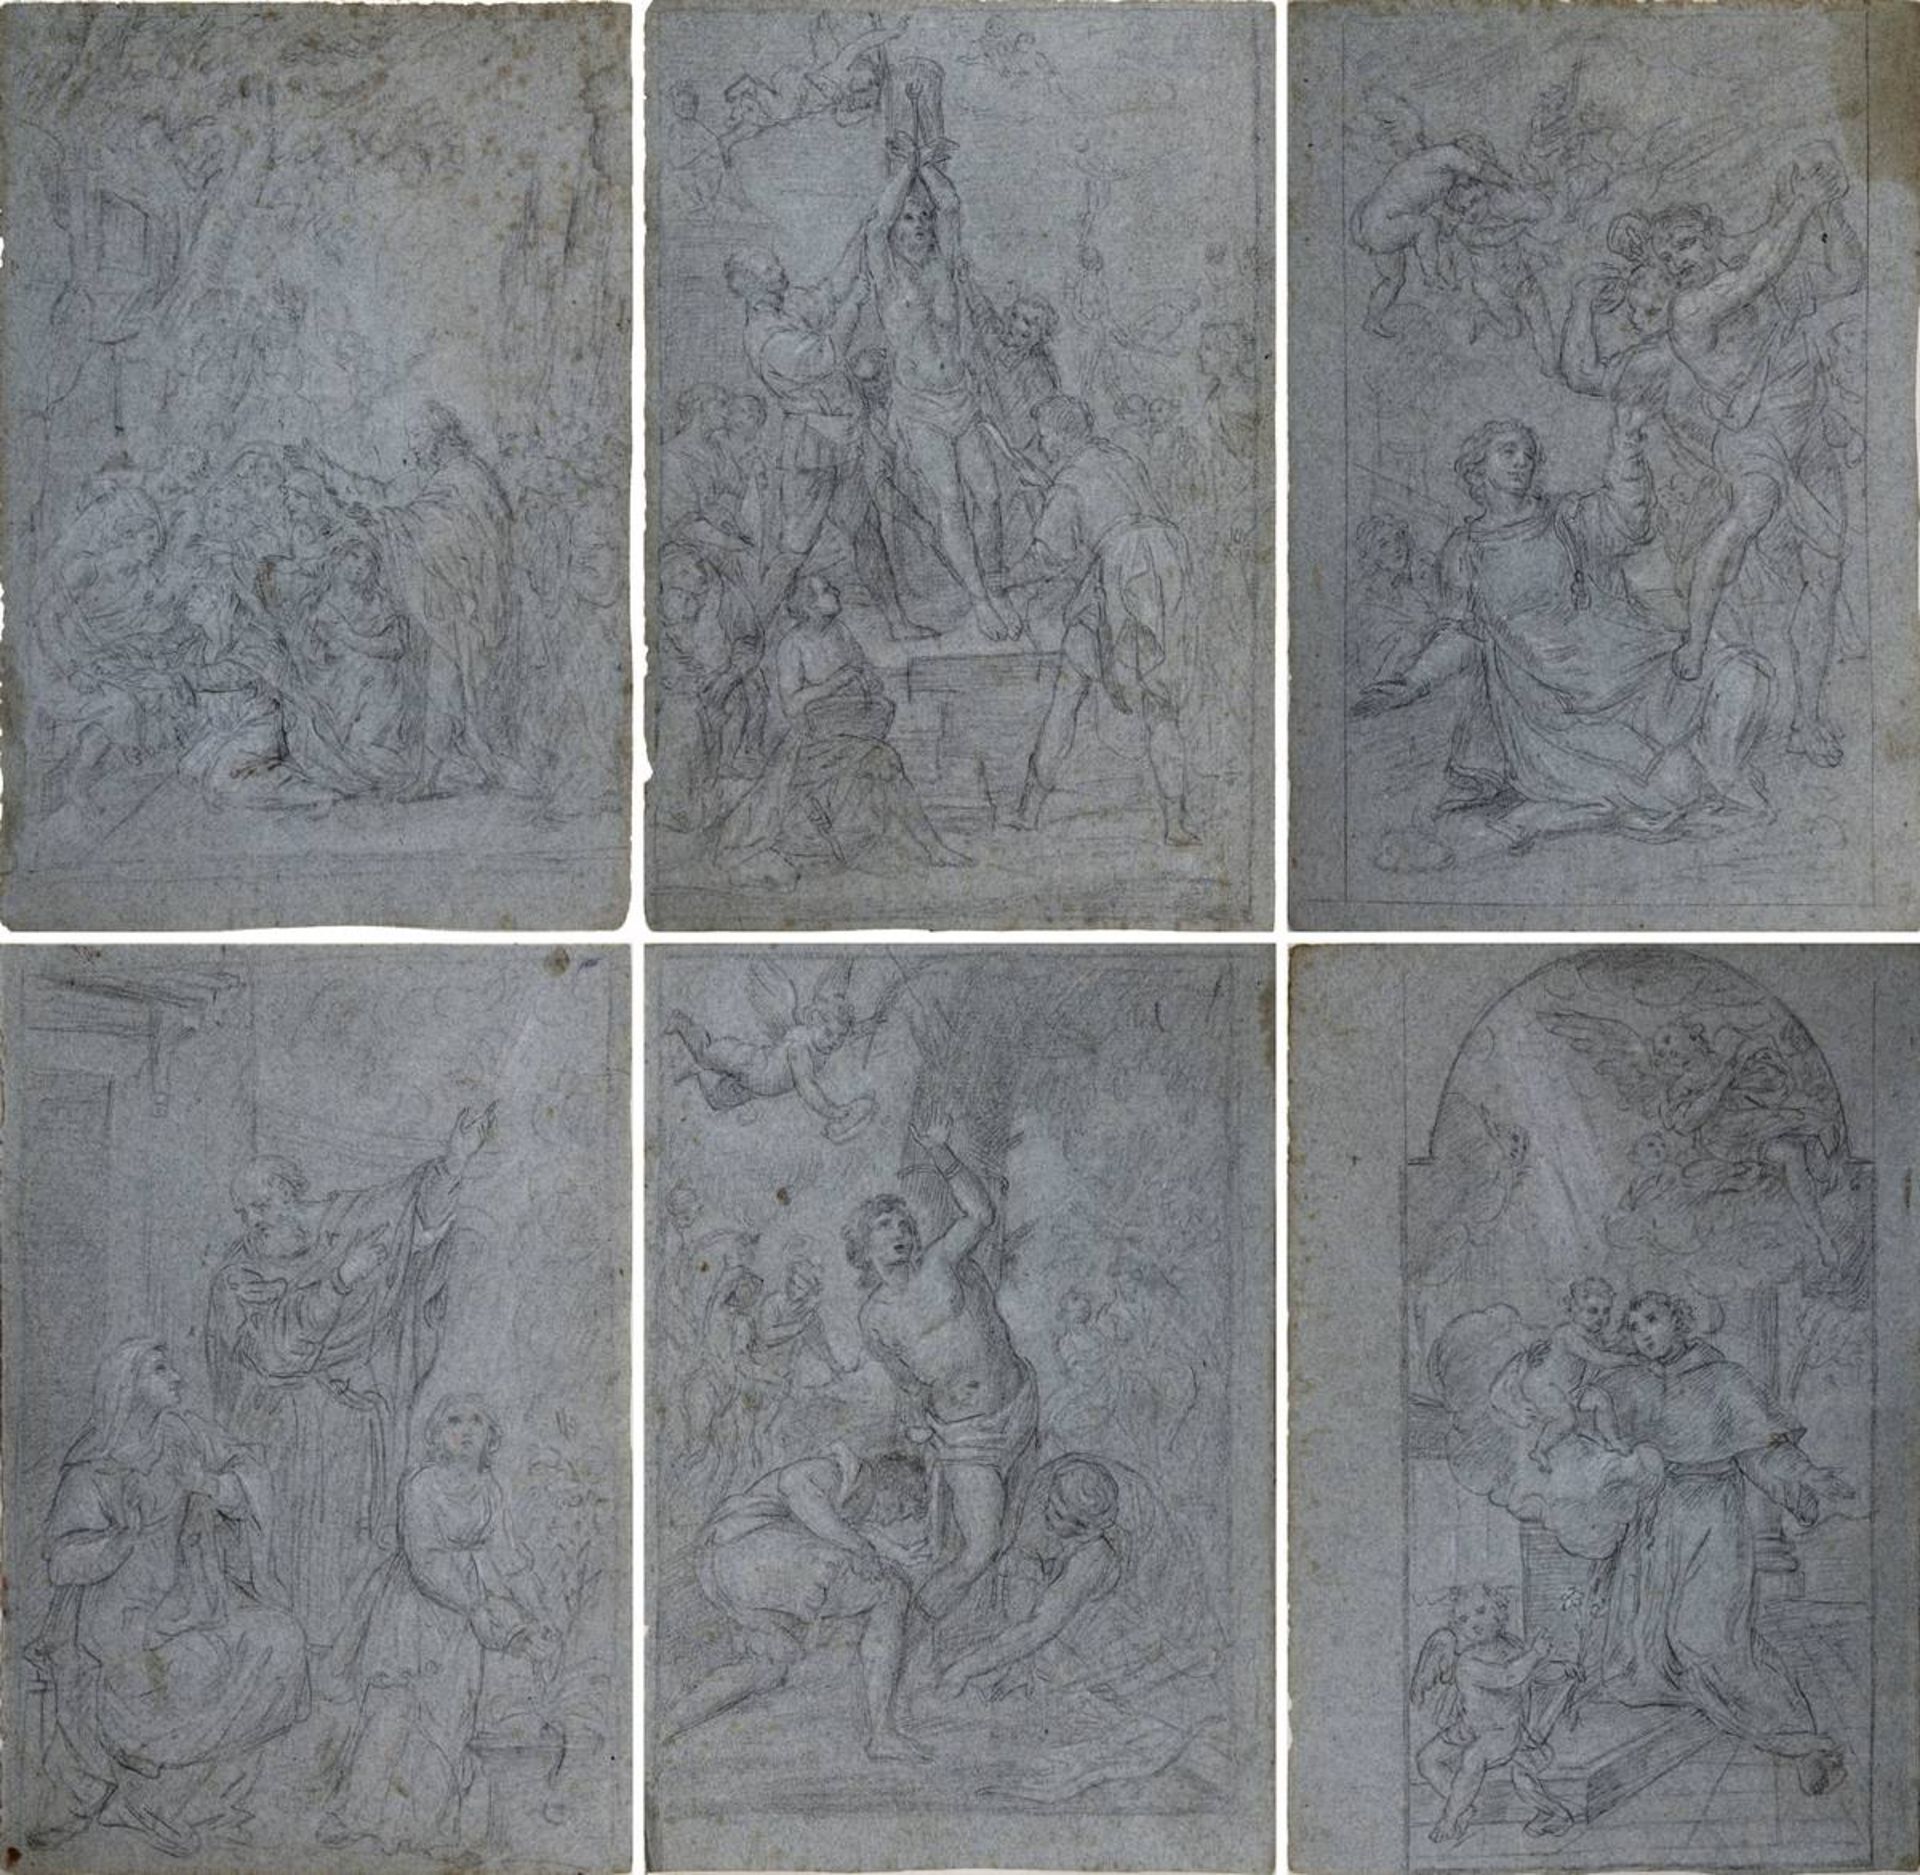 Zeichner 18. Jh., Sechs Zeichnungen von Heiligen und Märtyrern, u. a. Stephanus, Sebastian, Antonius